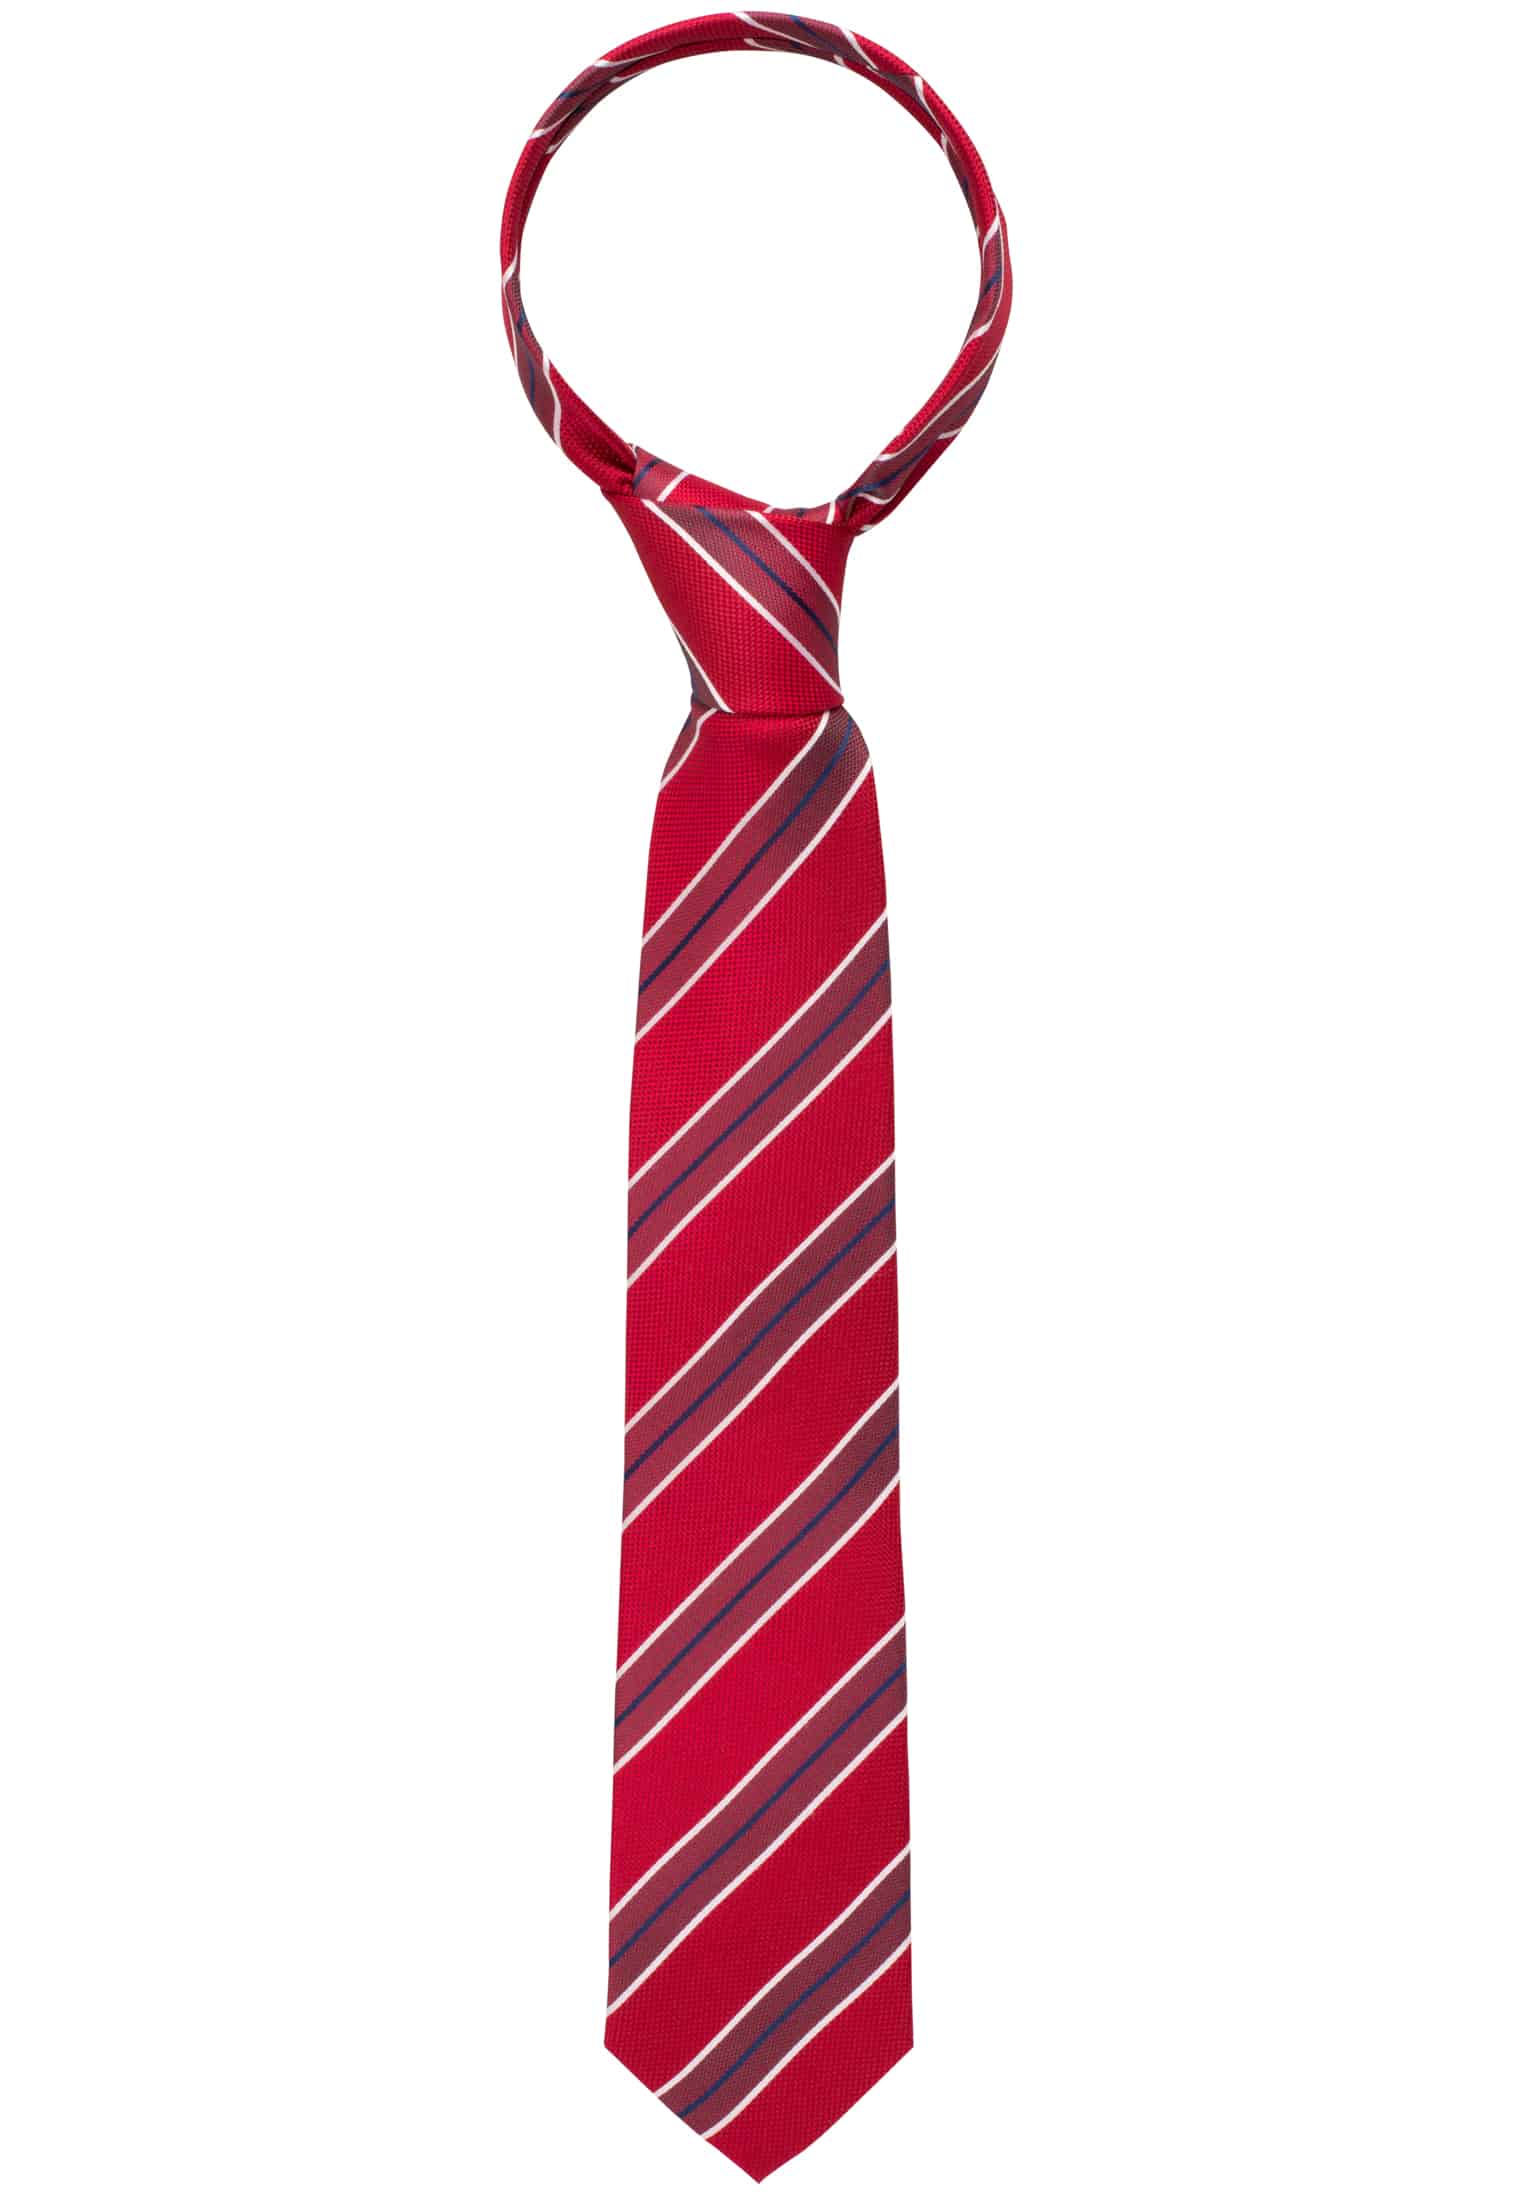 Krawatte in rot gestreift | rot | 142 | 1AC00533-05-01-142